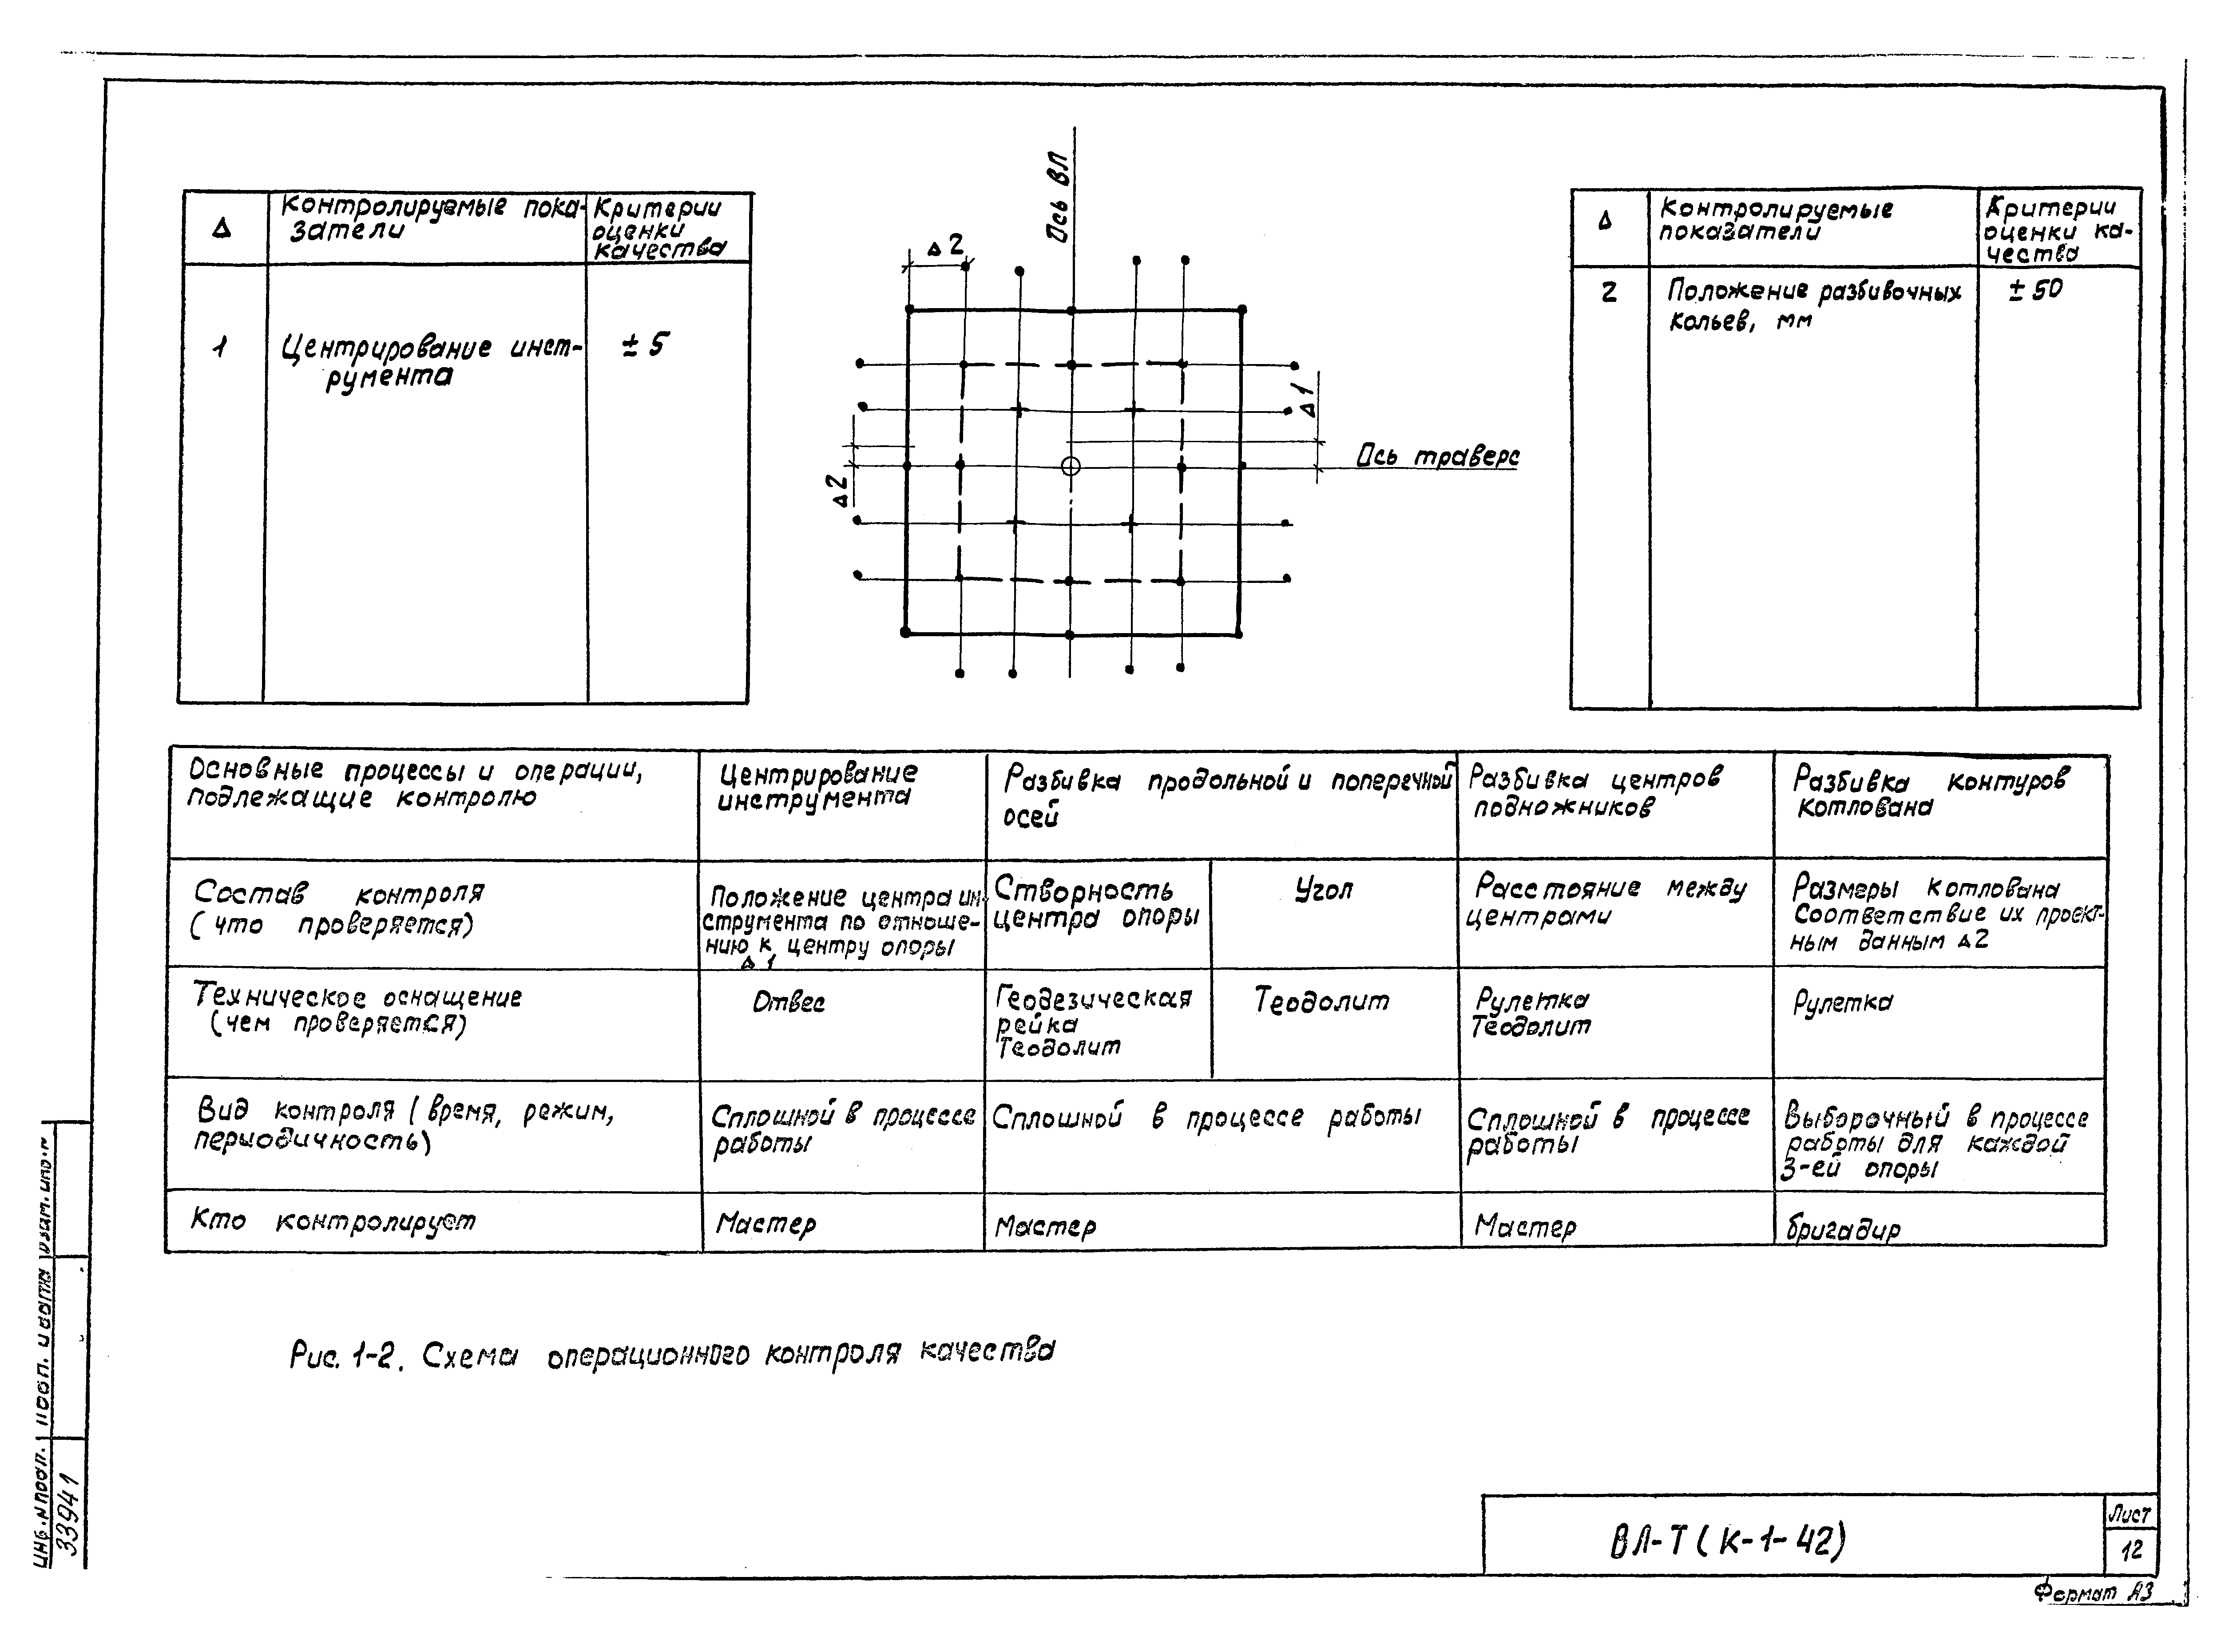 Технологическая карта К-1-42-1